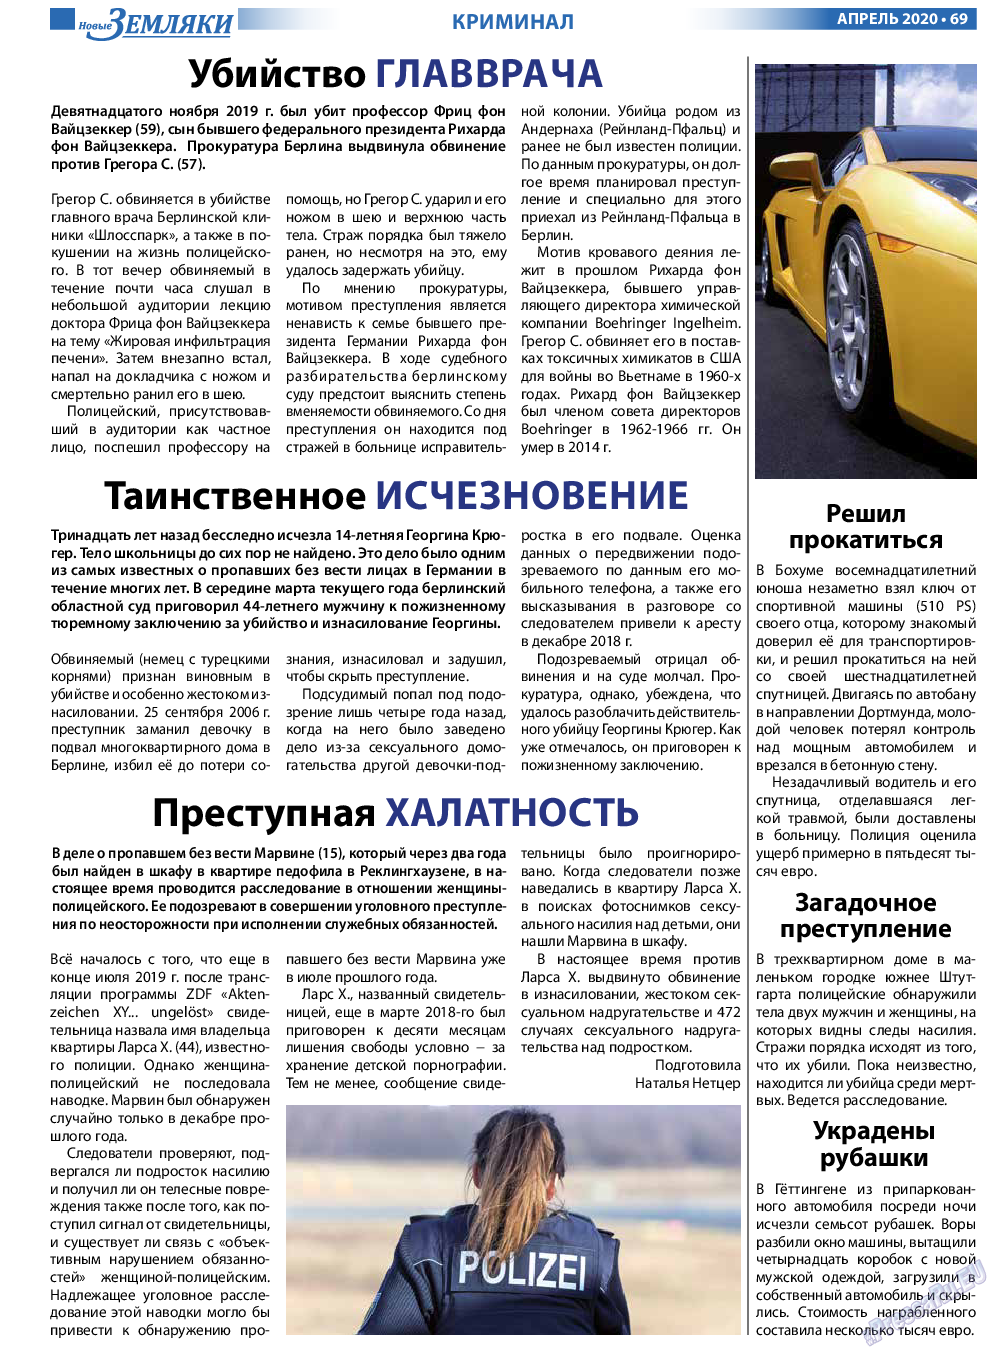 Новые Земляки, газета. 2020 №4 стр.69